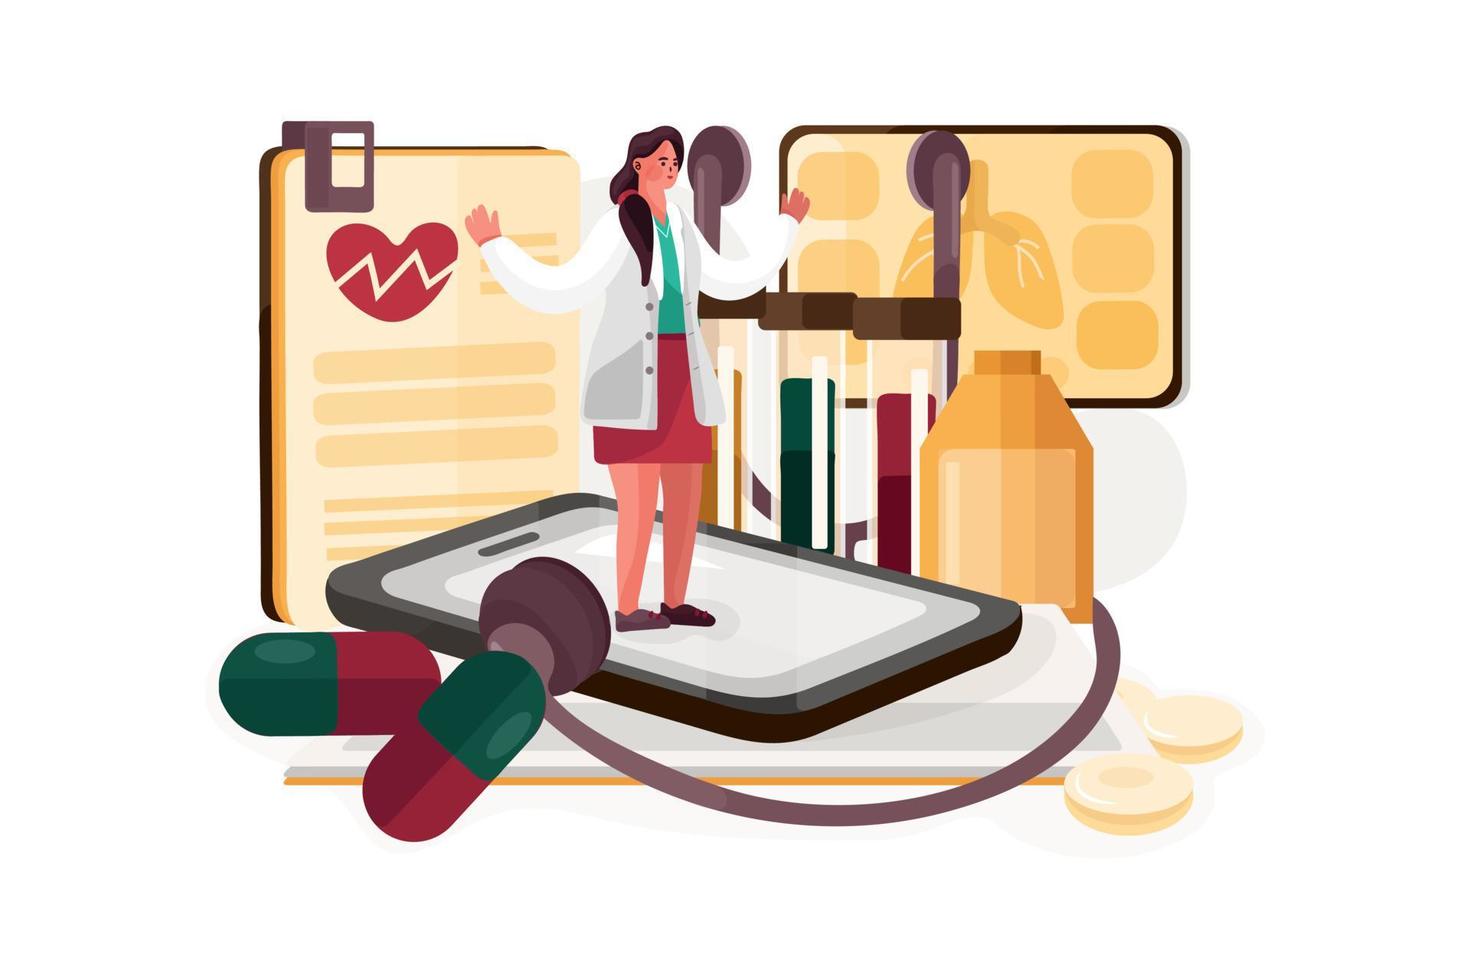 Digital health service Illustration vector